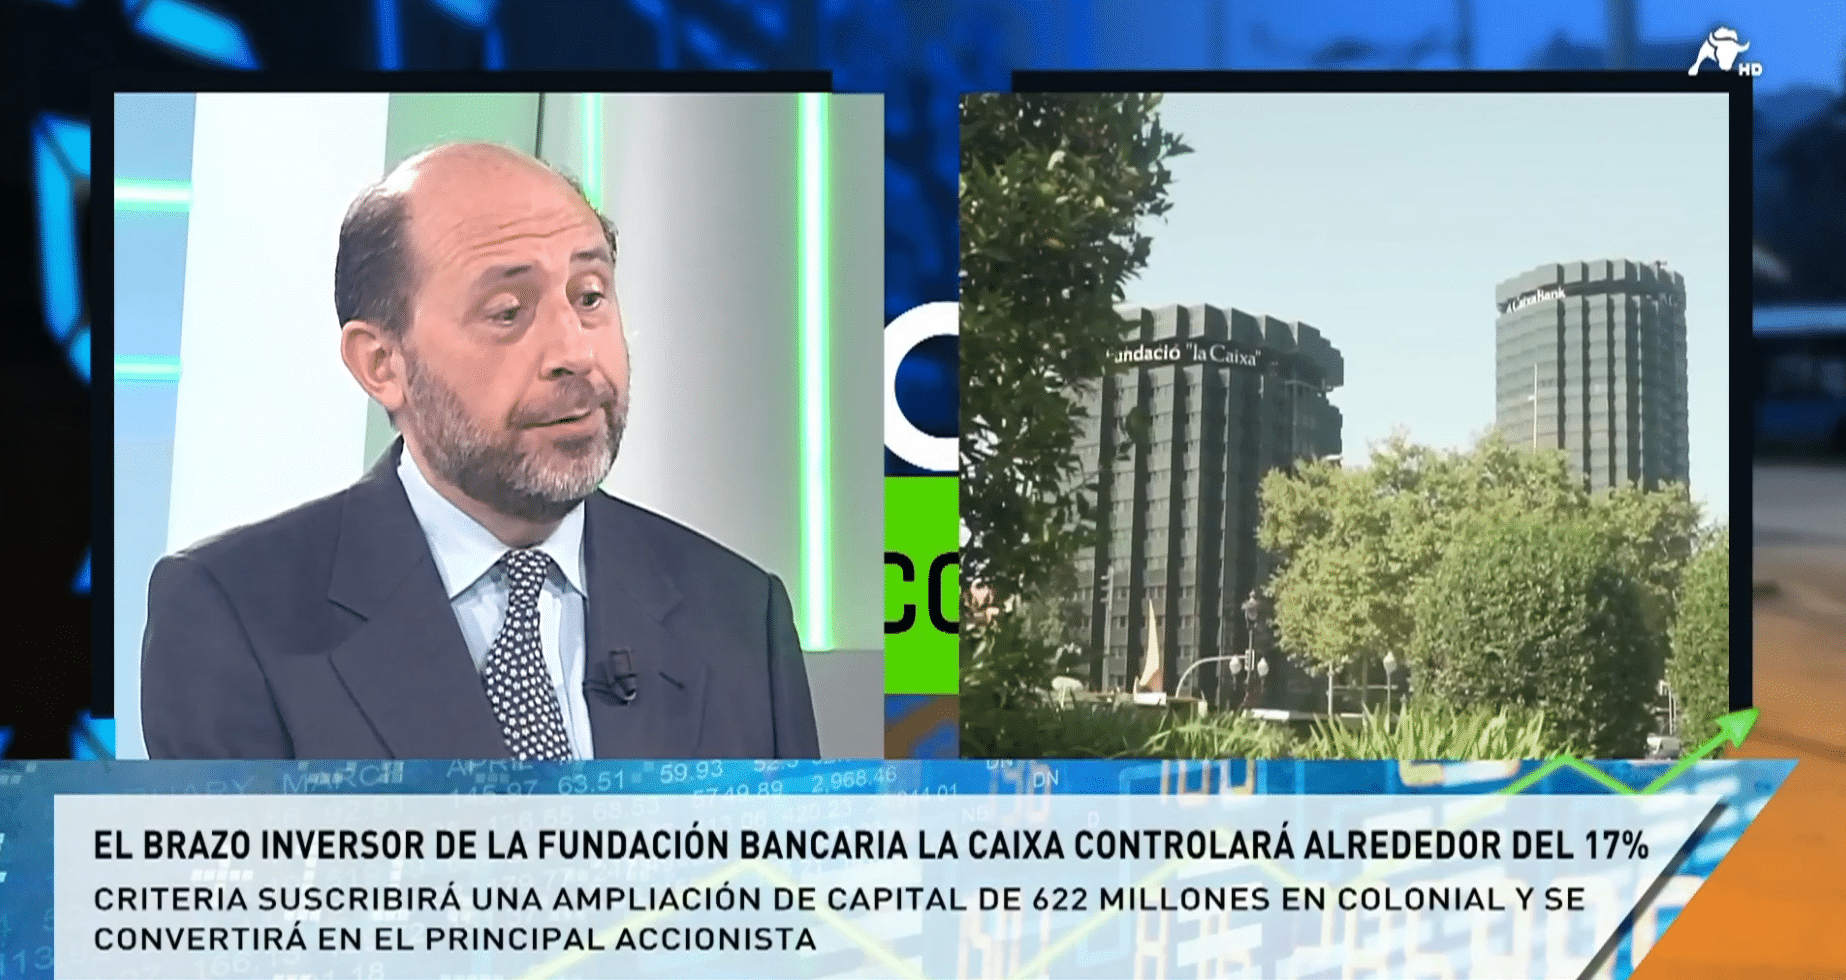 Miguel Ángel Cicuéndez: “Colonial es un valor que gusta, su tendencia es alcista y tiene recorrido”